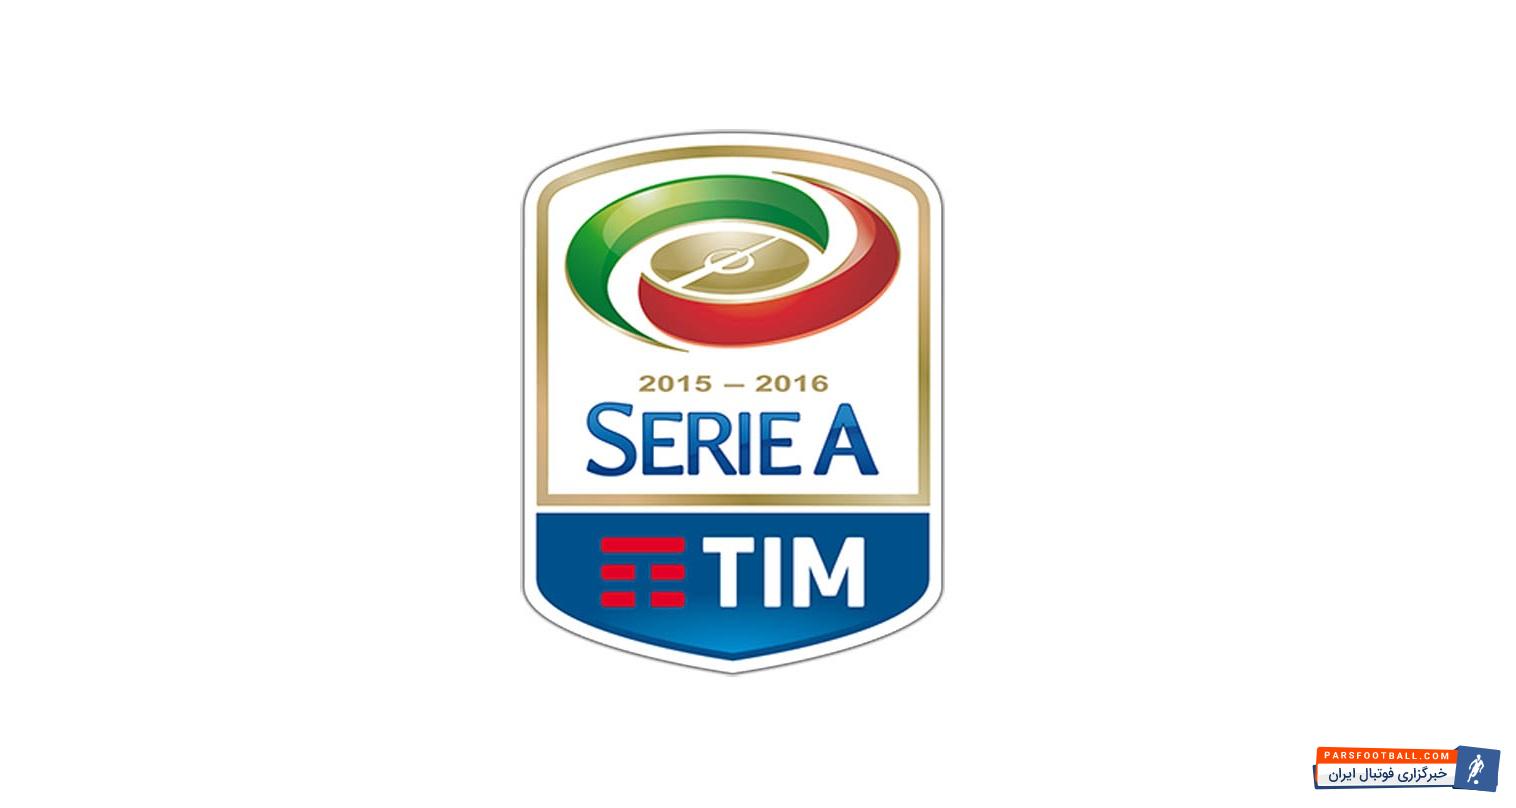 Серияа. Чемпионат Италии логотип. Италия лига про эмблема.